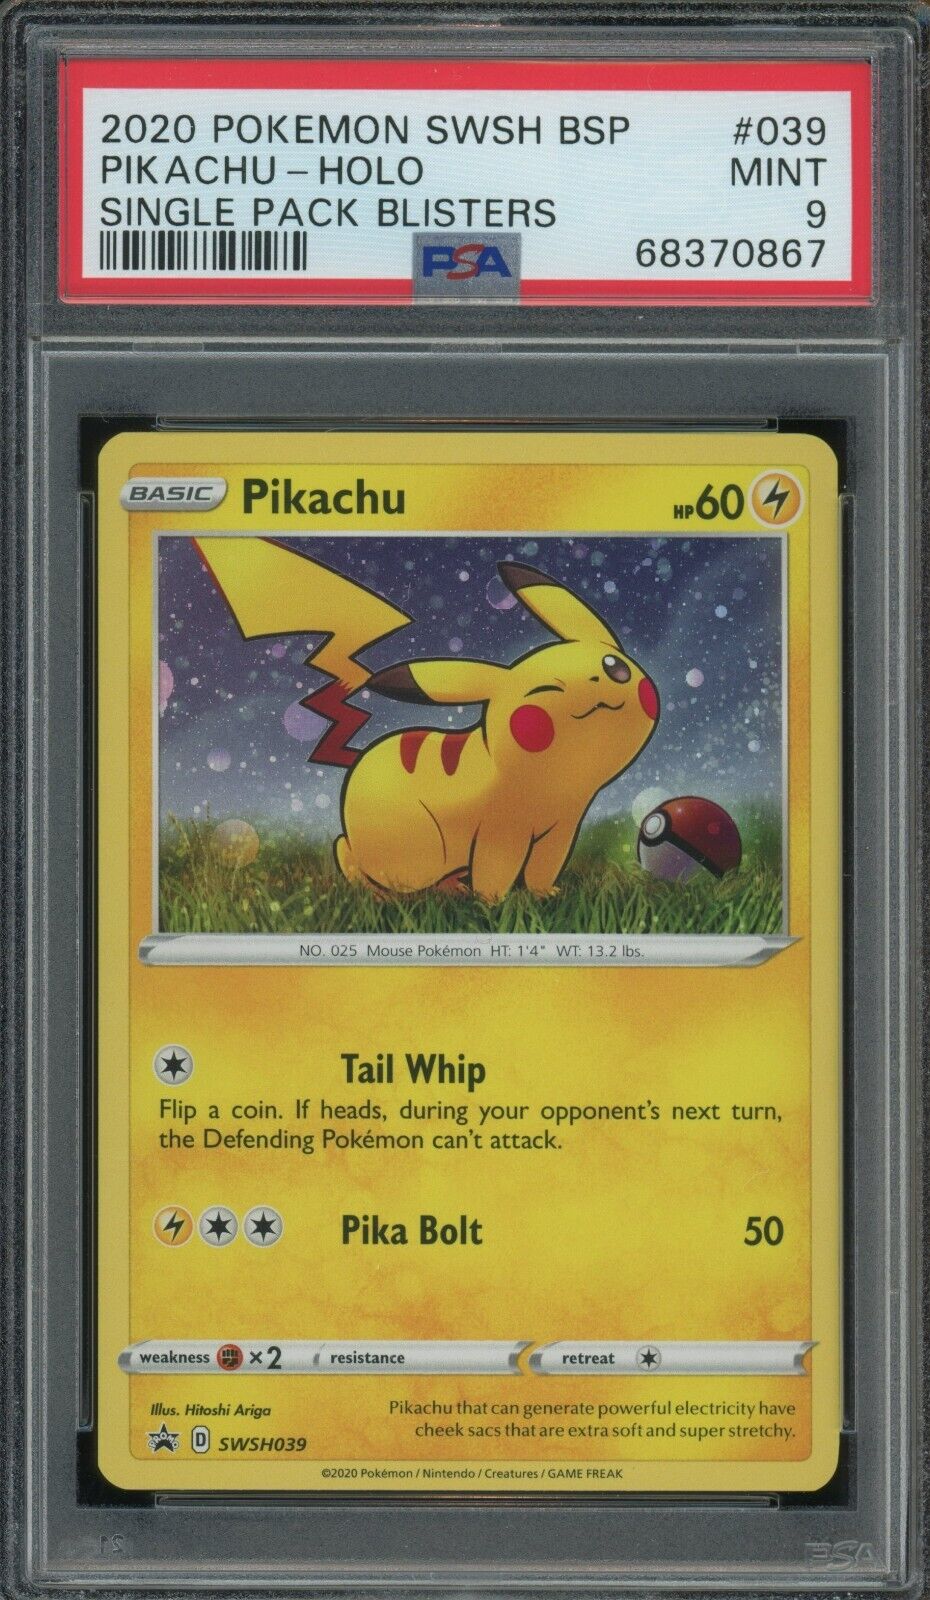 Pokemon Pikachu Blister Pack Holo Promo SWSH039 PSA 9 Mint